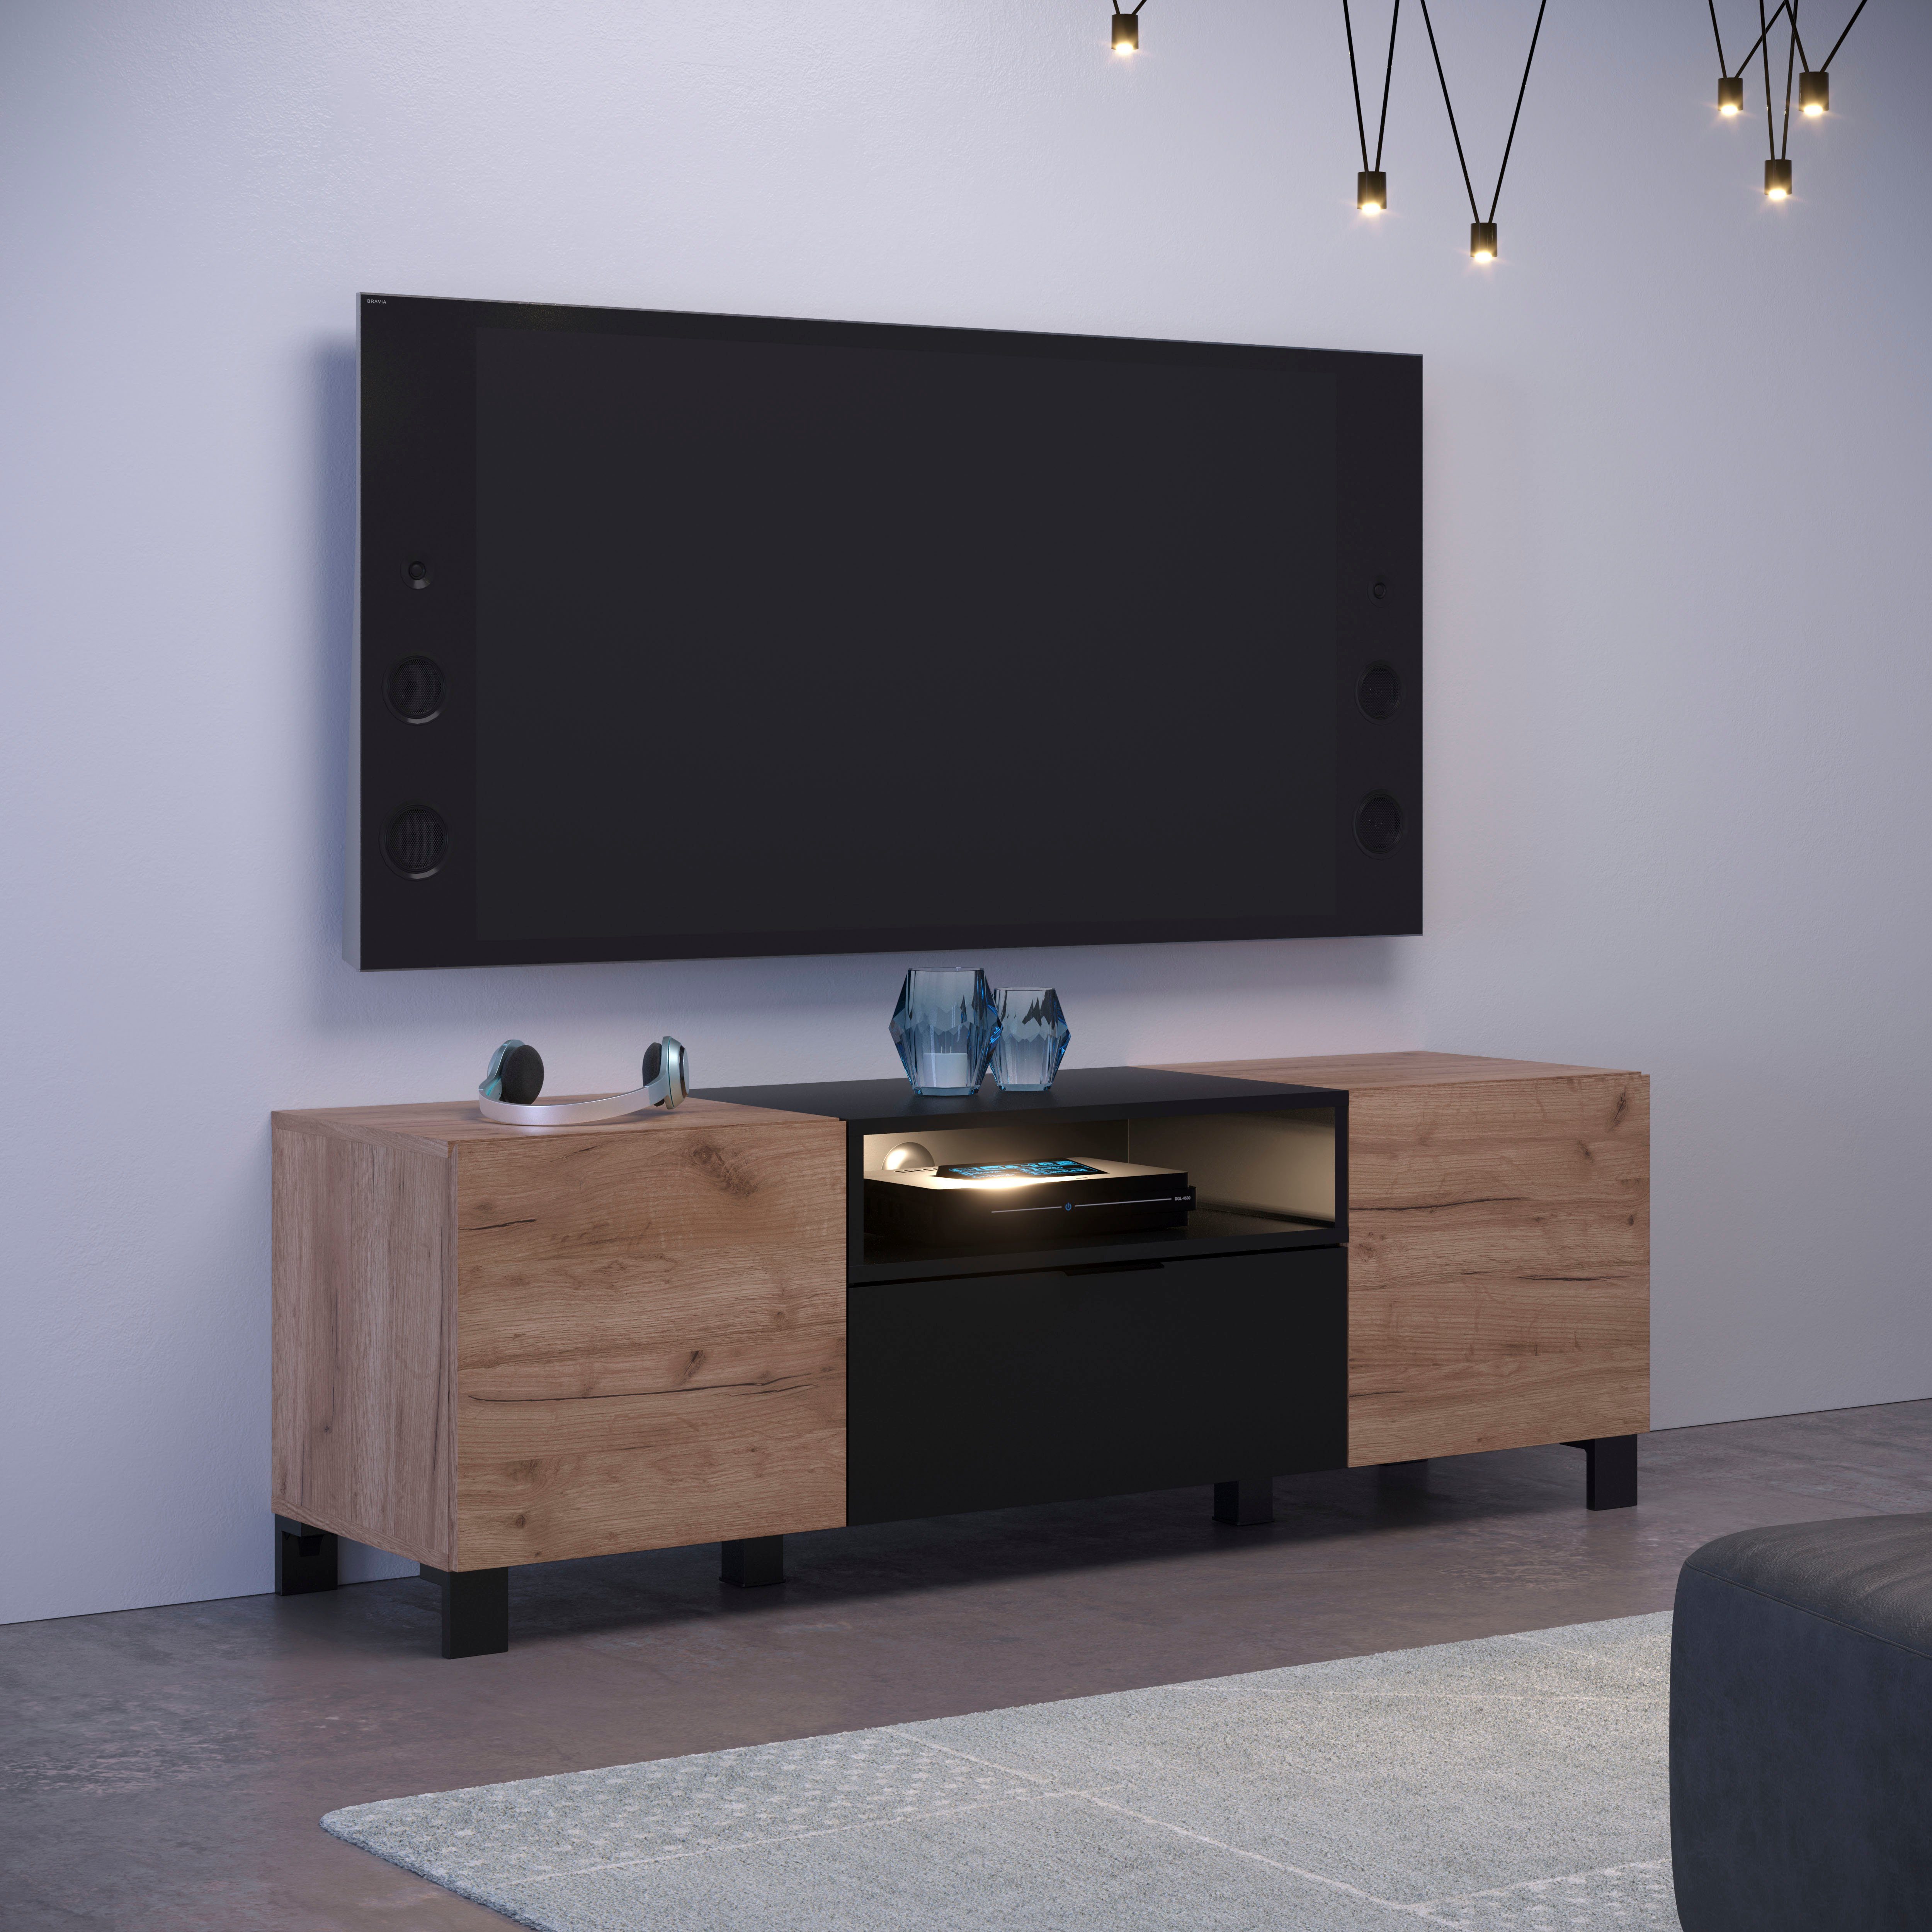 INOSIGN Lowboard Kriens, TV Schrank, hellbraun / schwarz matt, Breite 144 cm,  Höhe 47 cm, viele Erweiterungsmöglichkeiten